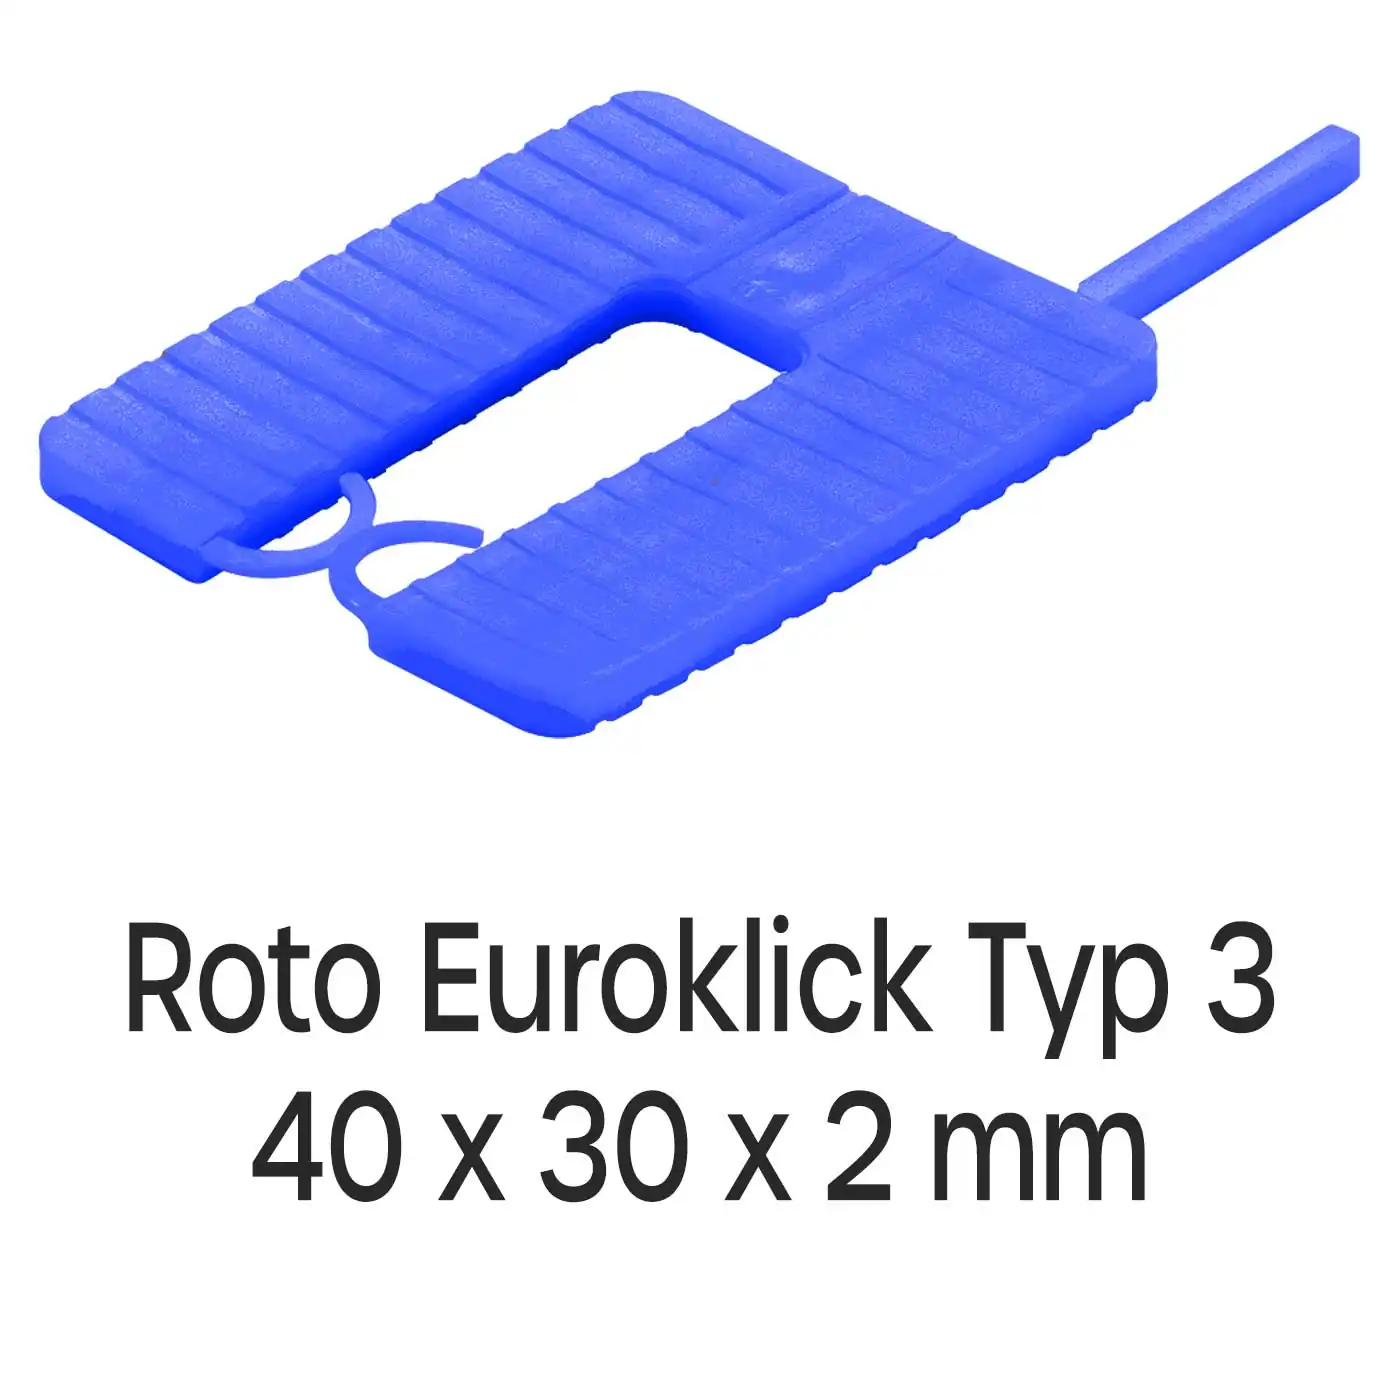 Distanzplatten Roto Euroklick Typ 3 40 x 30 x 2 mm 1000 Stück